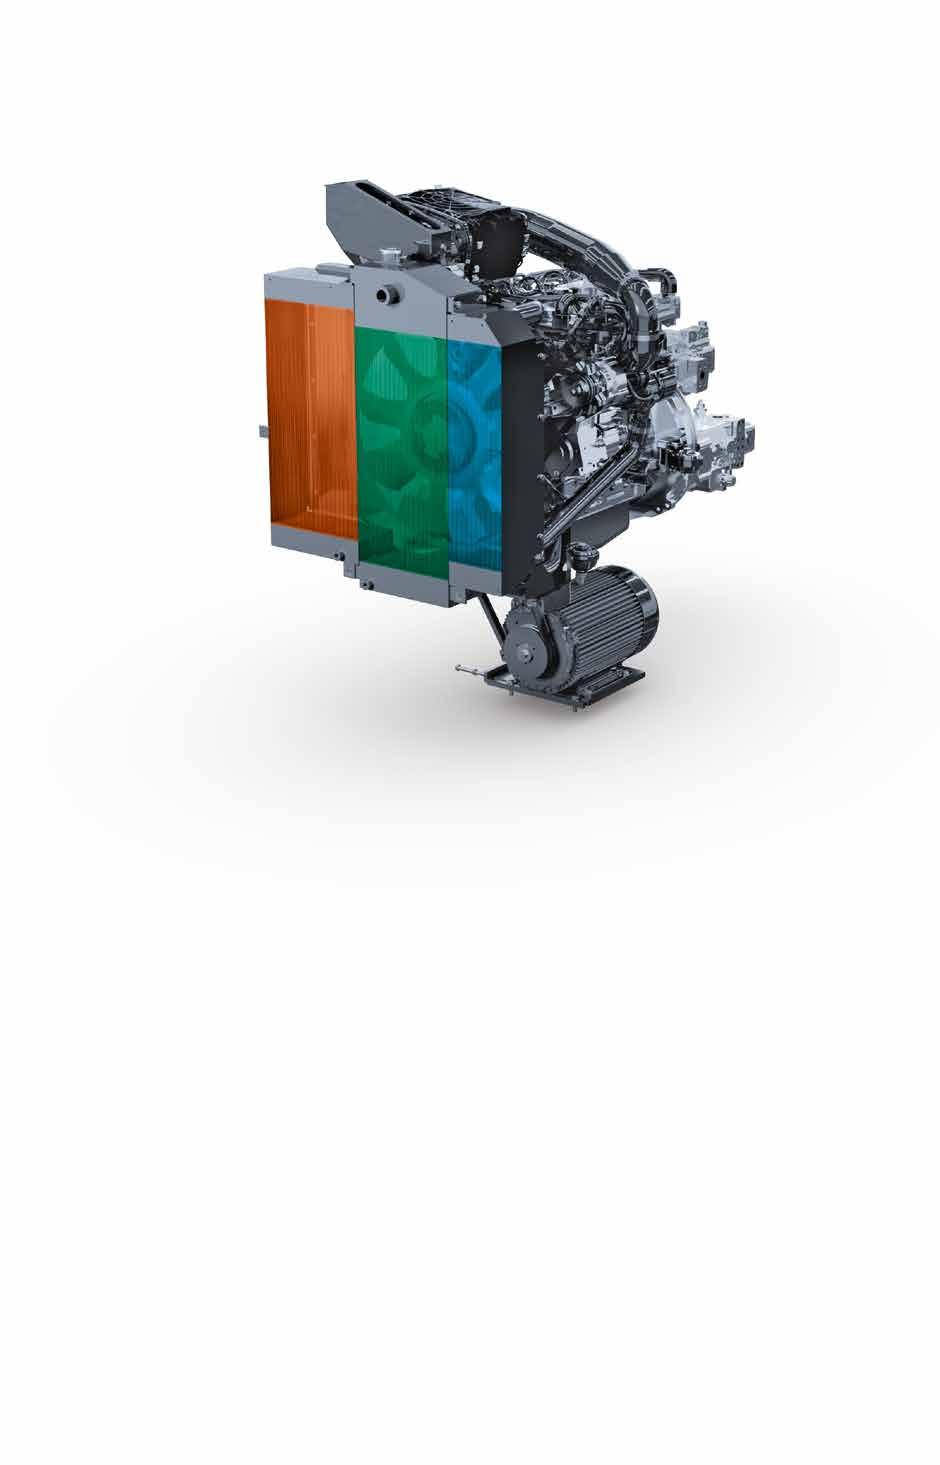 Volle Power, intelligente Technik Drei Hauptkomponenten bilden die Antriebseinheit des : der groß dimensionierte Mehrfeldkühler, ein moderner, flüssigkeitsgekühlter Dieselmotor und ein direkt am